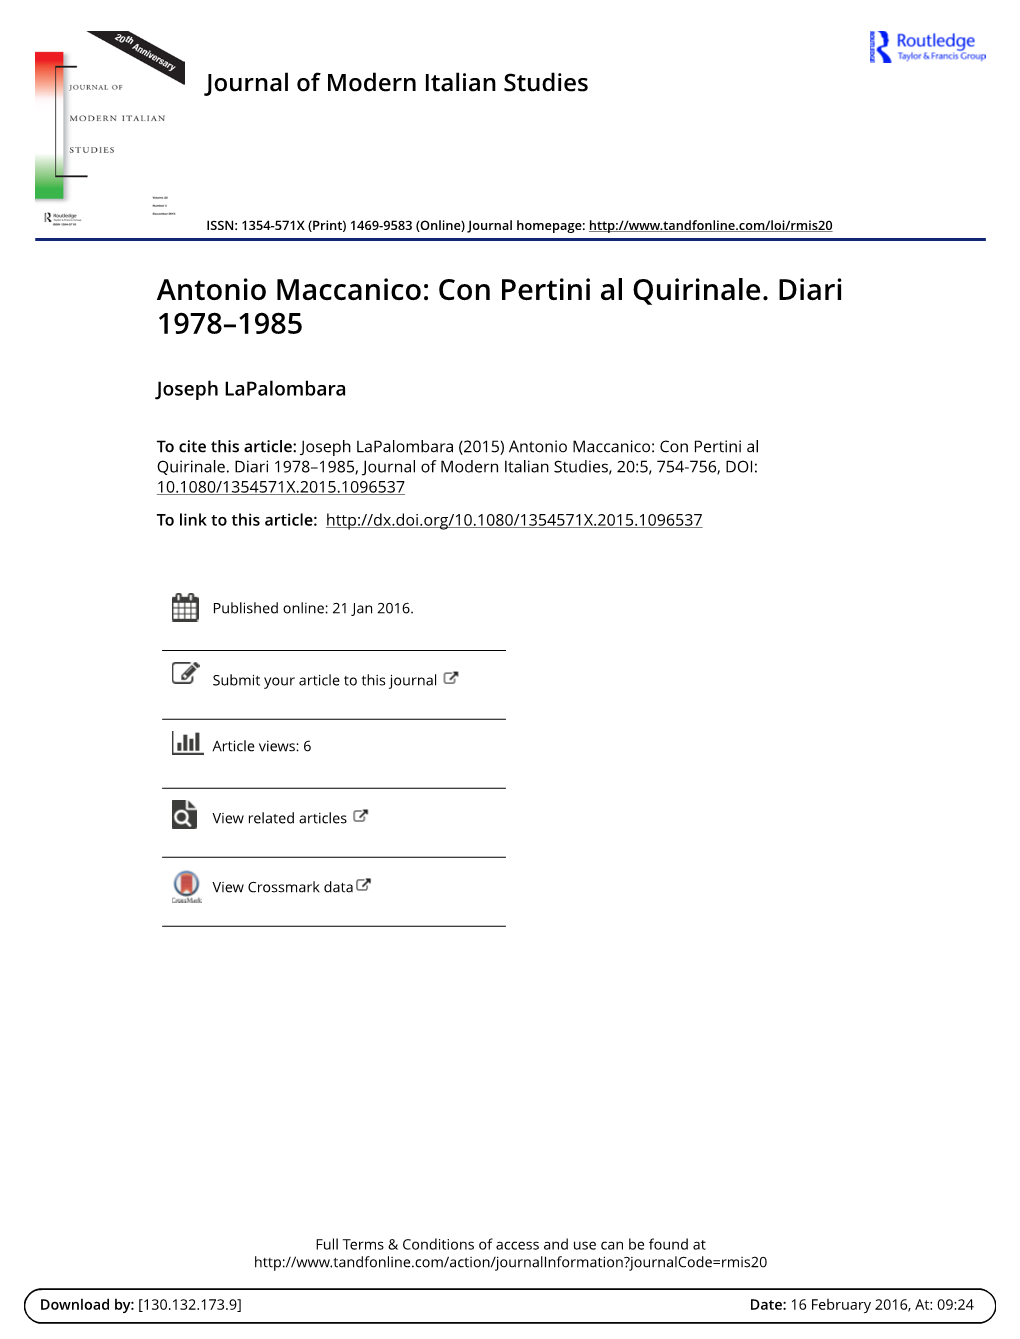 Antonio Maccanico: Con Pertini Al Quirinale. Diari 1978–1985